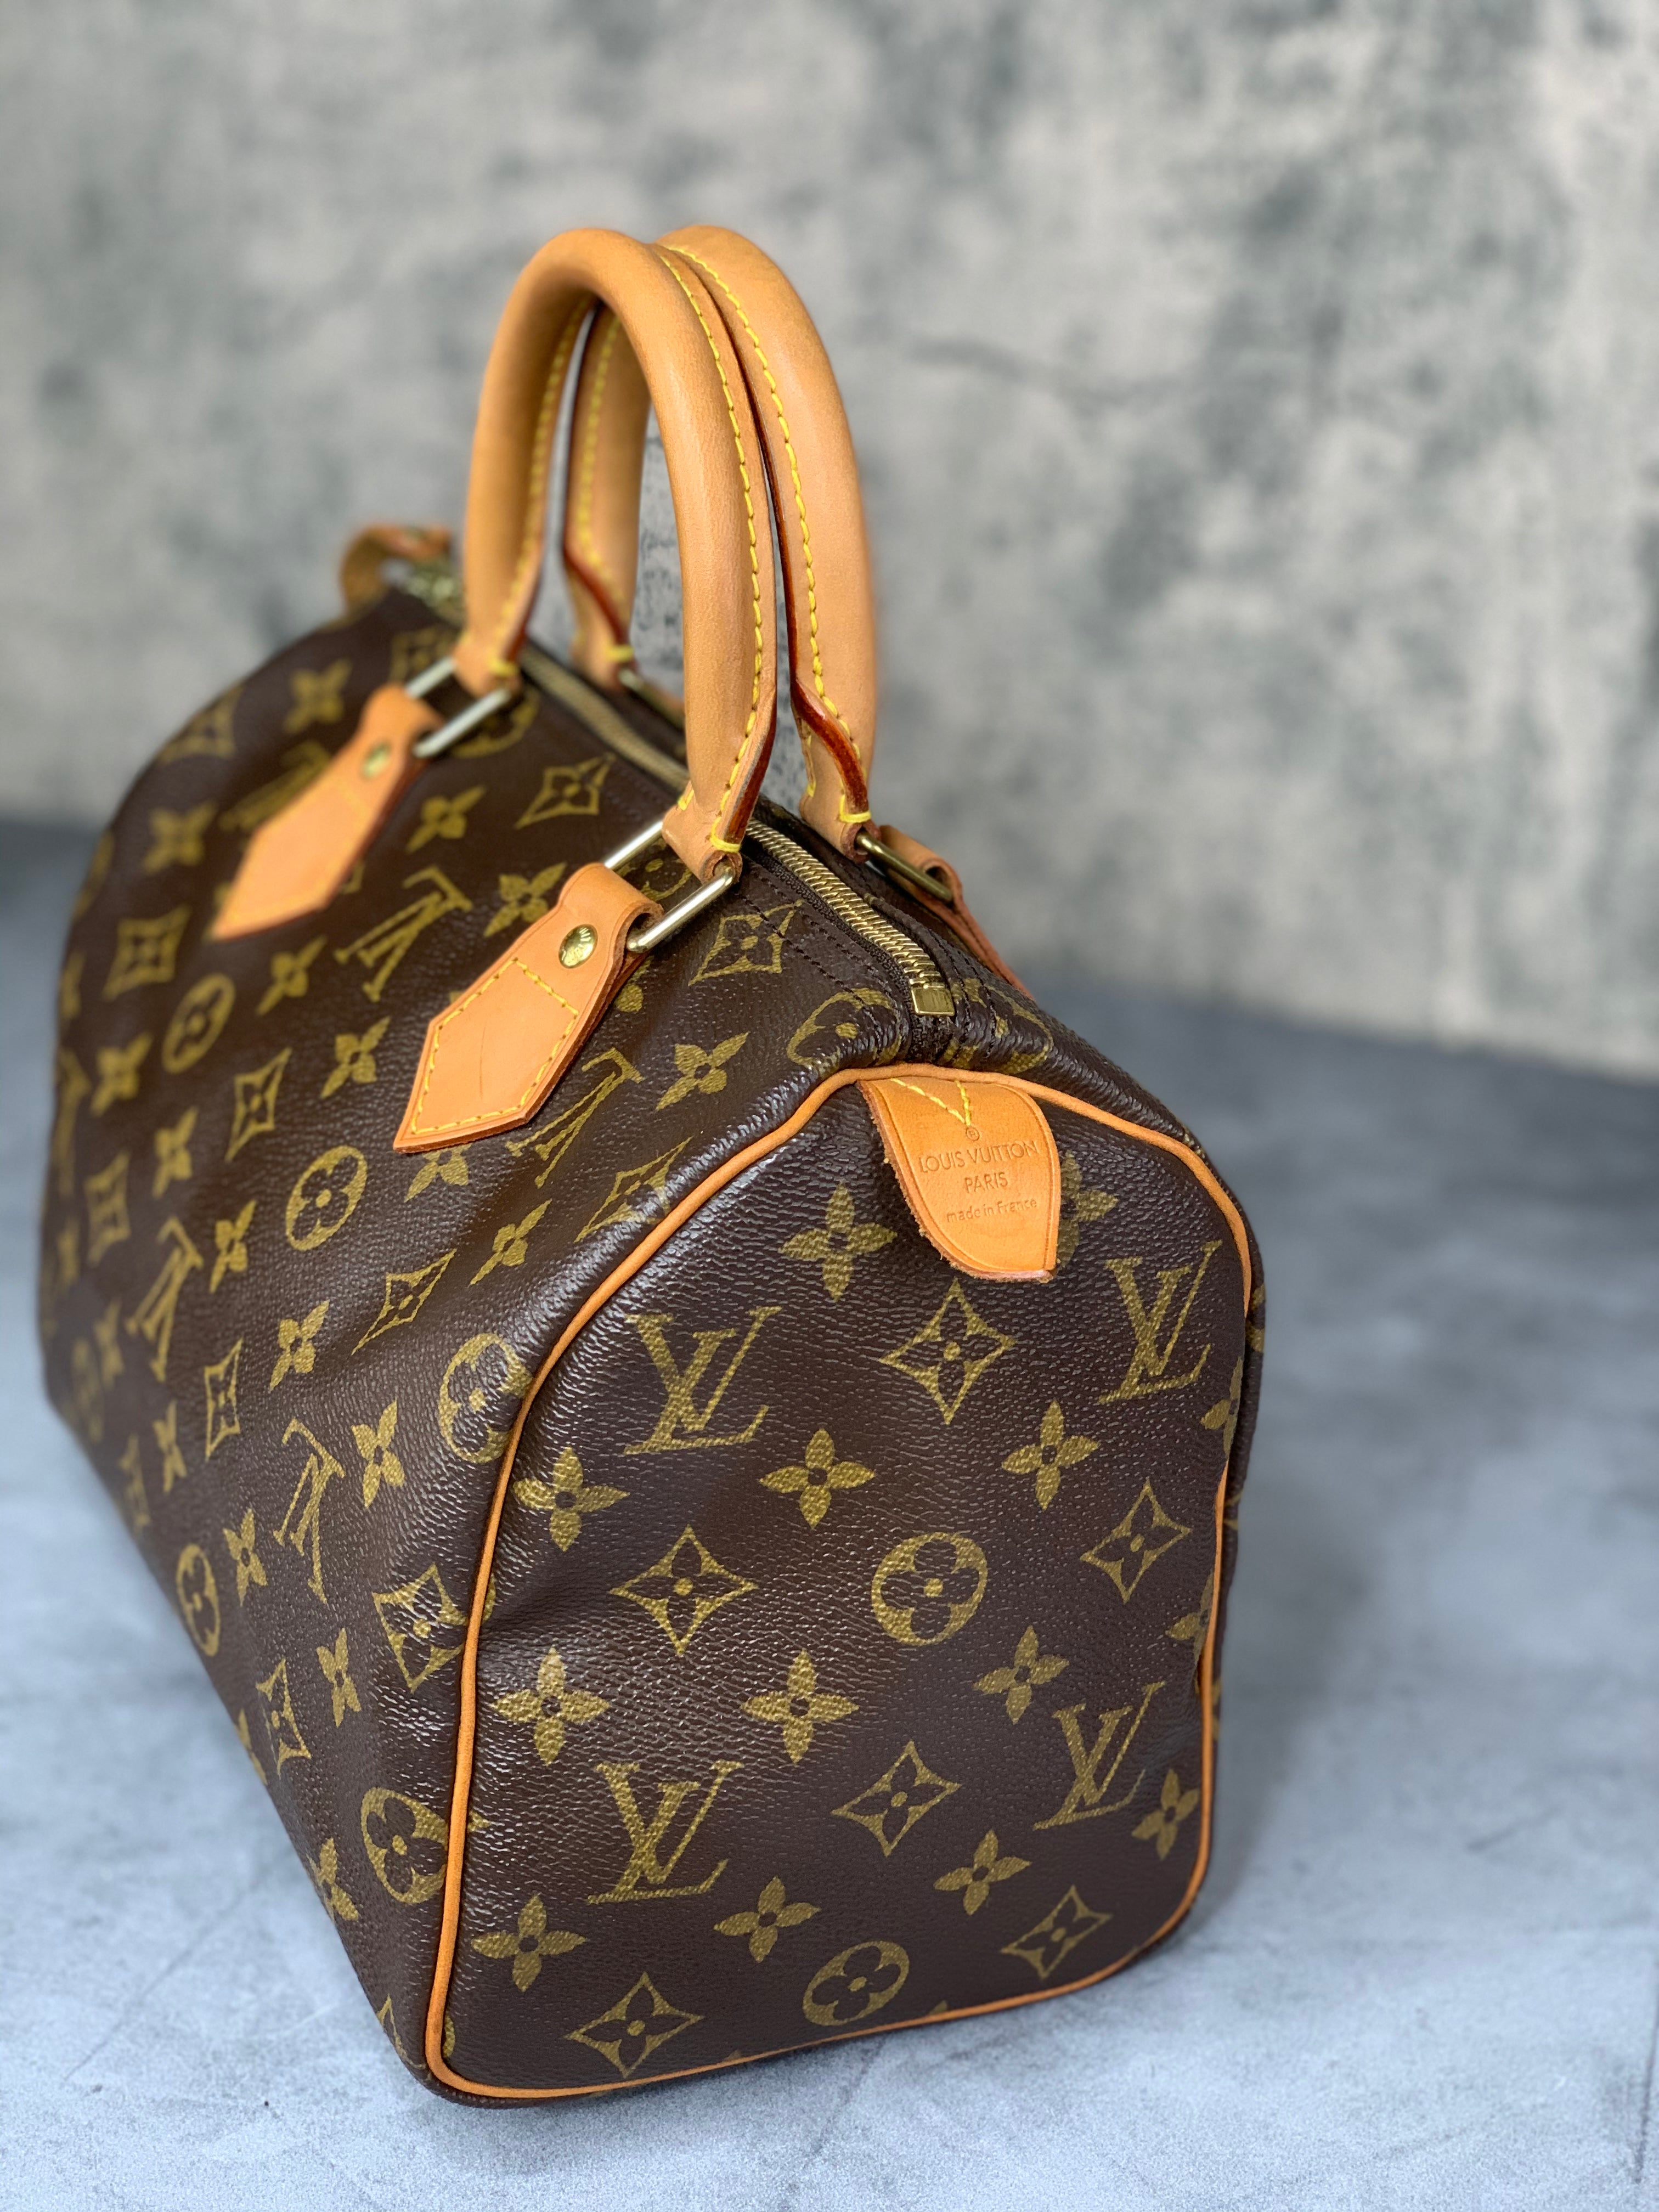 Authentic Louis Vuitton speedy 25 purse